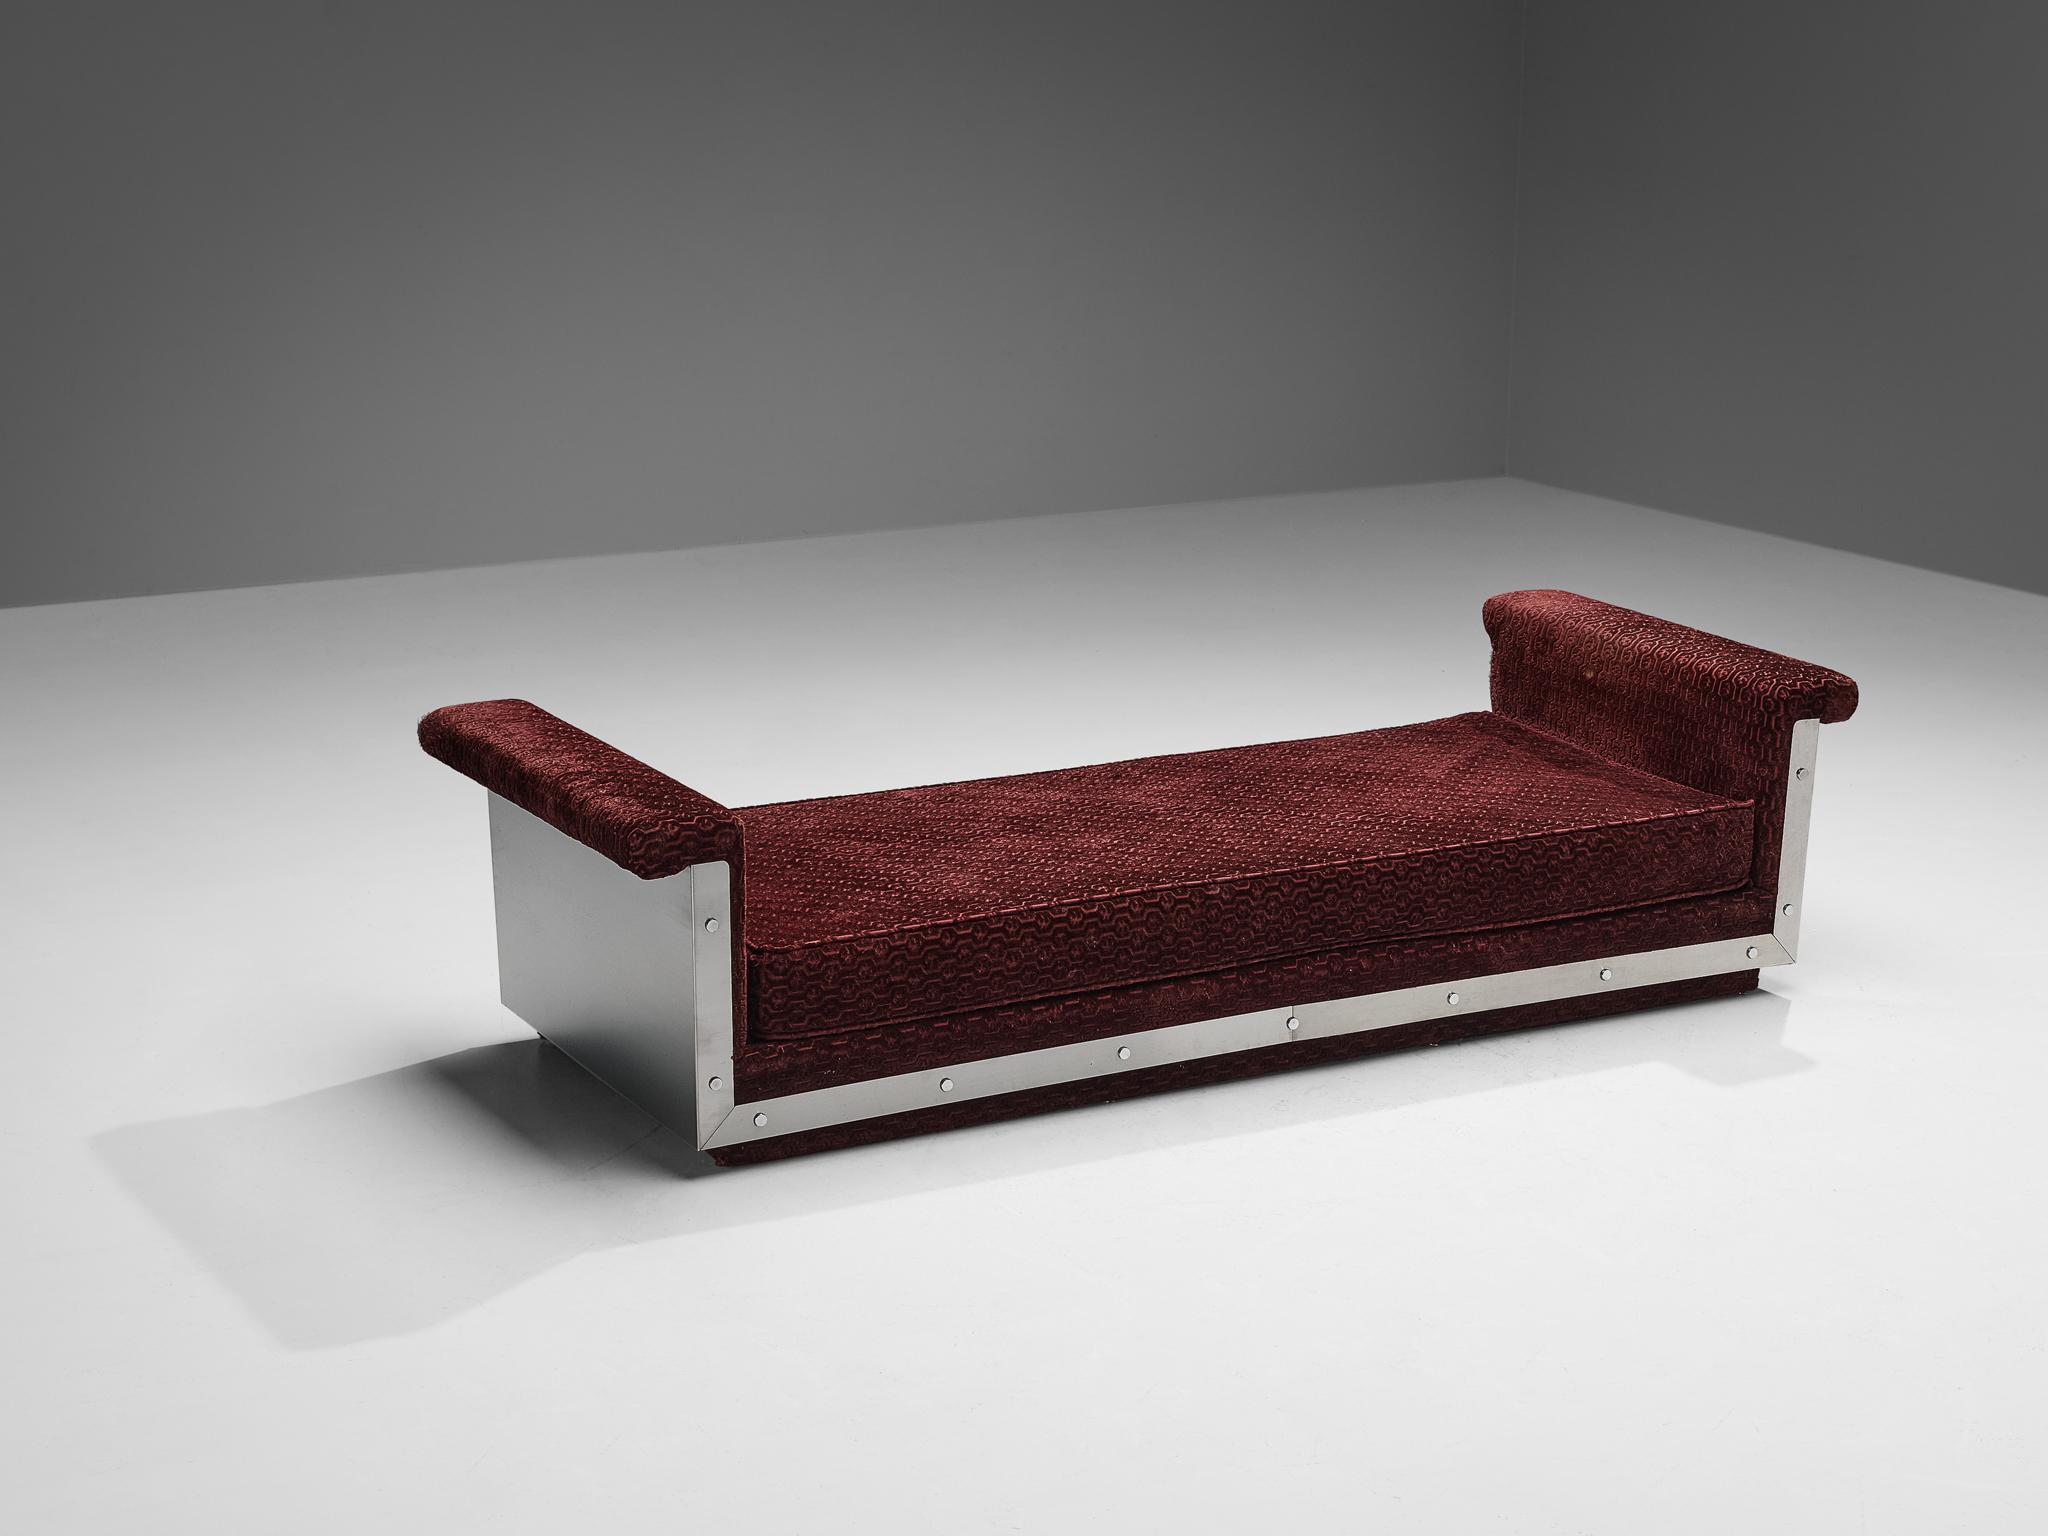 Canapé-lit, acier inoxydable, tissu, France, fin des années 1960.

Lit de jour moderne et épuré en acier inoxydable et revêtement à motifs de velours. Ce design a une expression très forte grâce au cadre en acier de forme minimaliste. Cette base